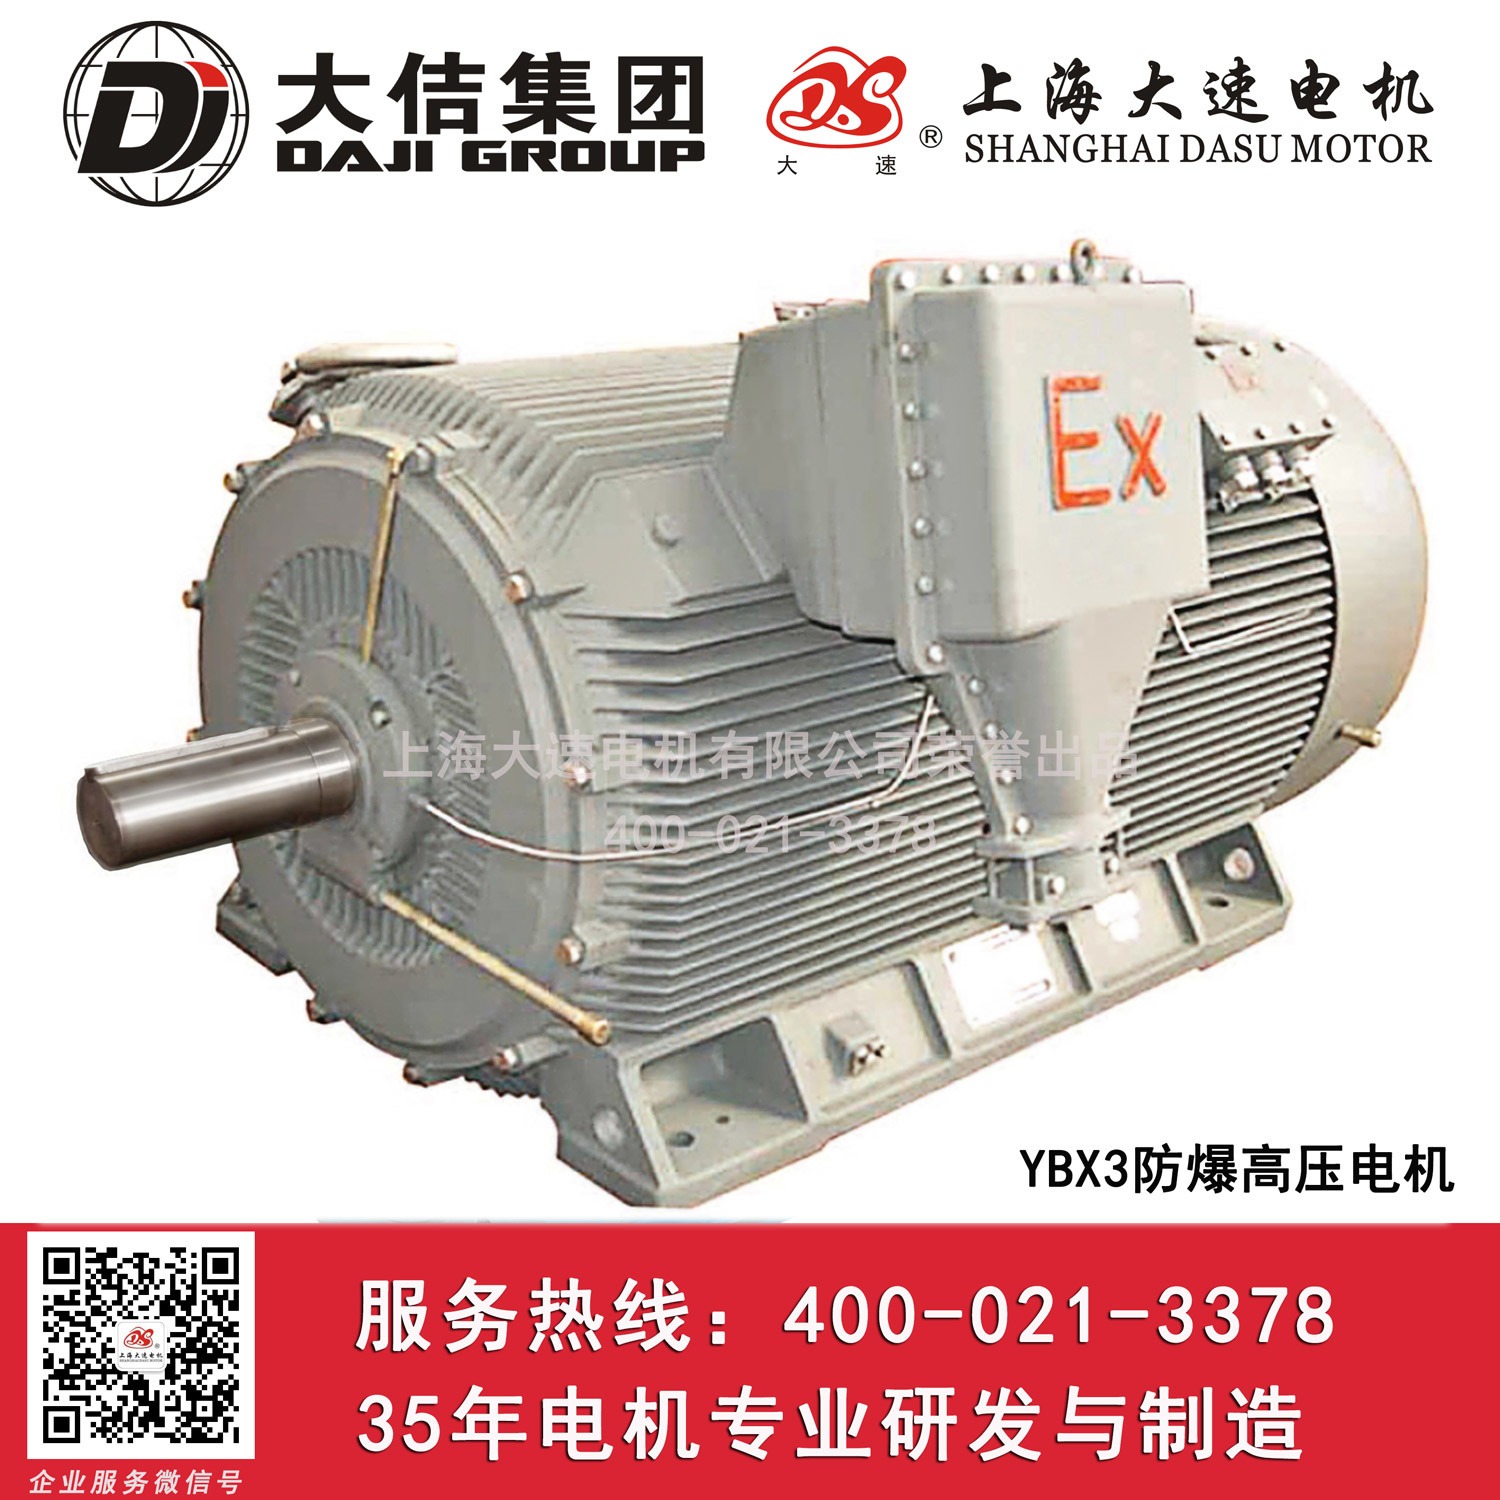 上海大速电机10KV6KVYBX3防爆高压电动机防爆变频电机高压电机工家直销